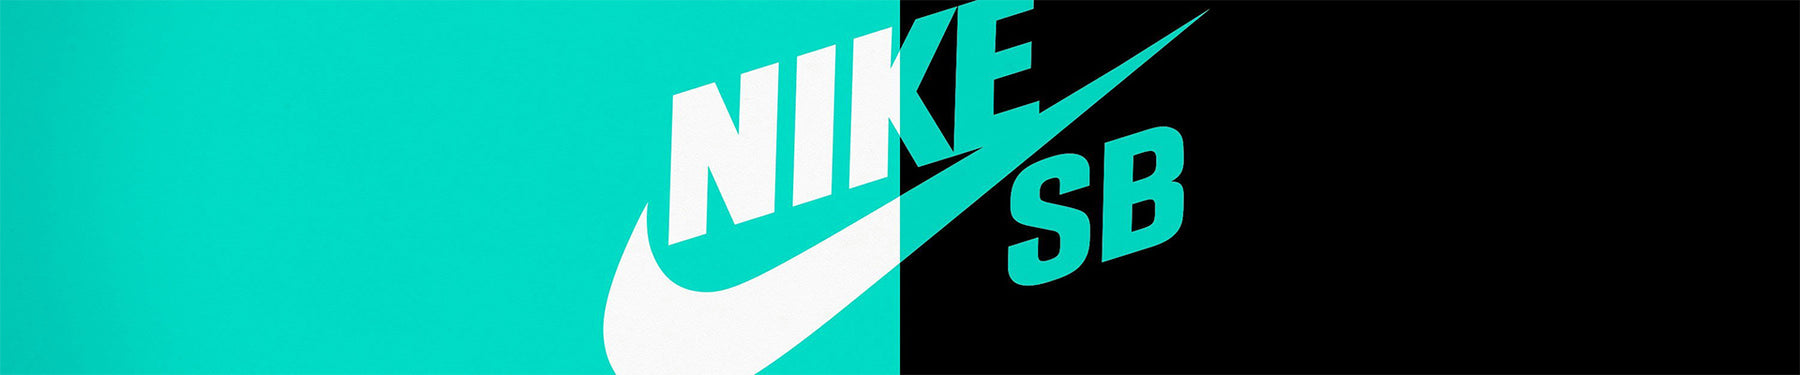 Nike SB Dunk Low - Ben G Skateshop